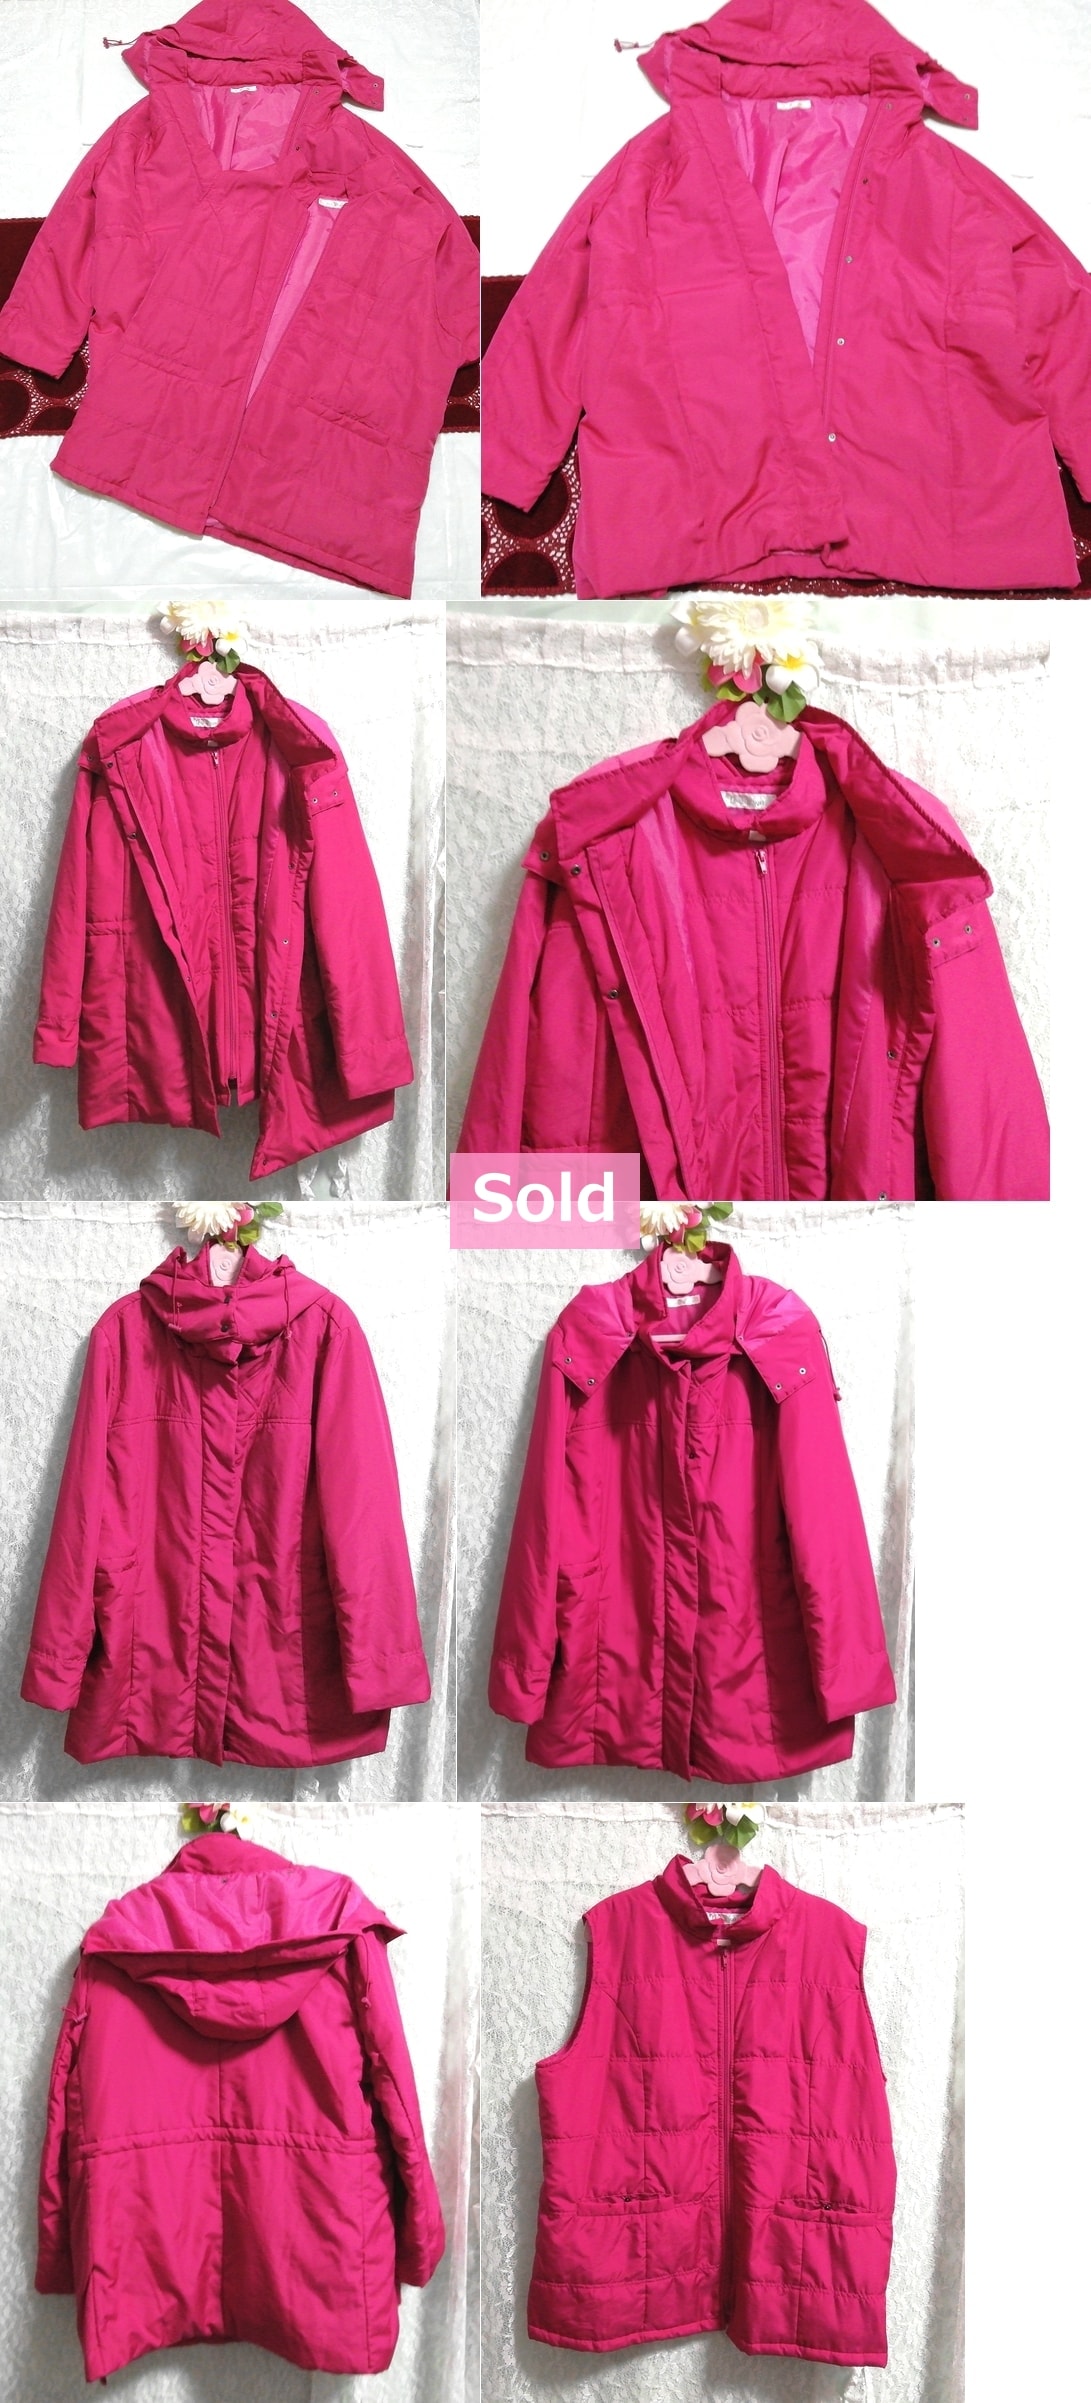 マゼンタピンク ベストとダウンコート 2セット 4L Magenta pink vest and down coat 2 sets, コート&コート一般&XLサイズ以上